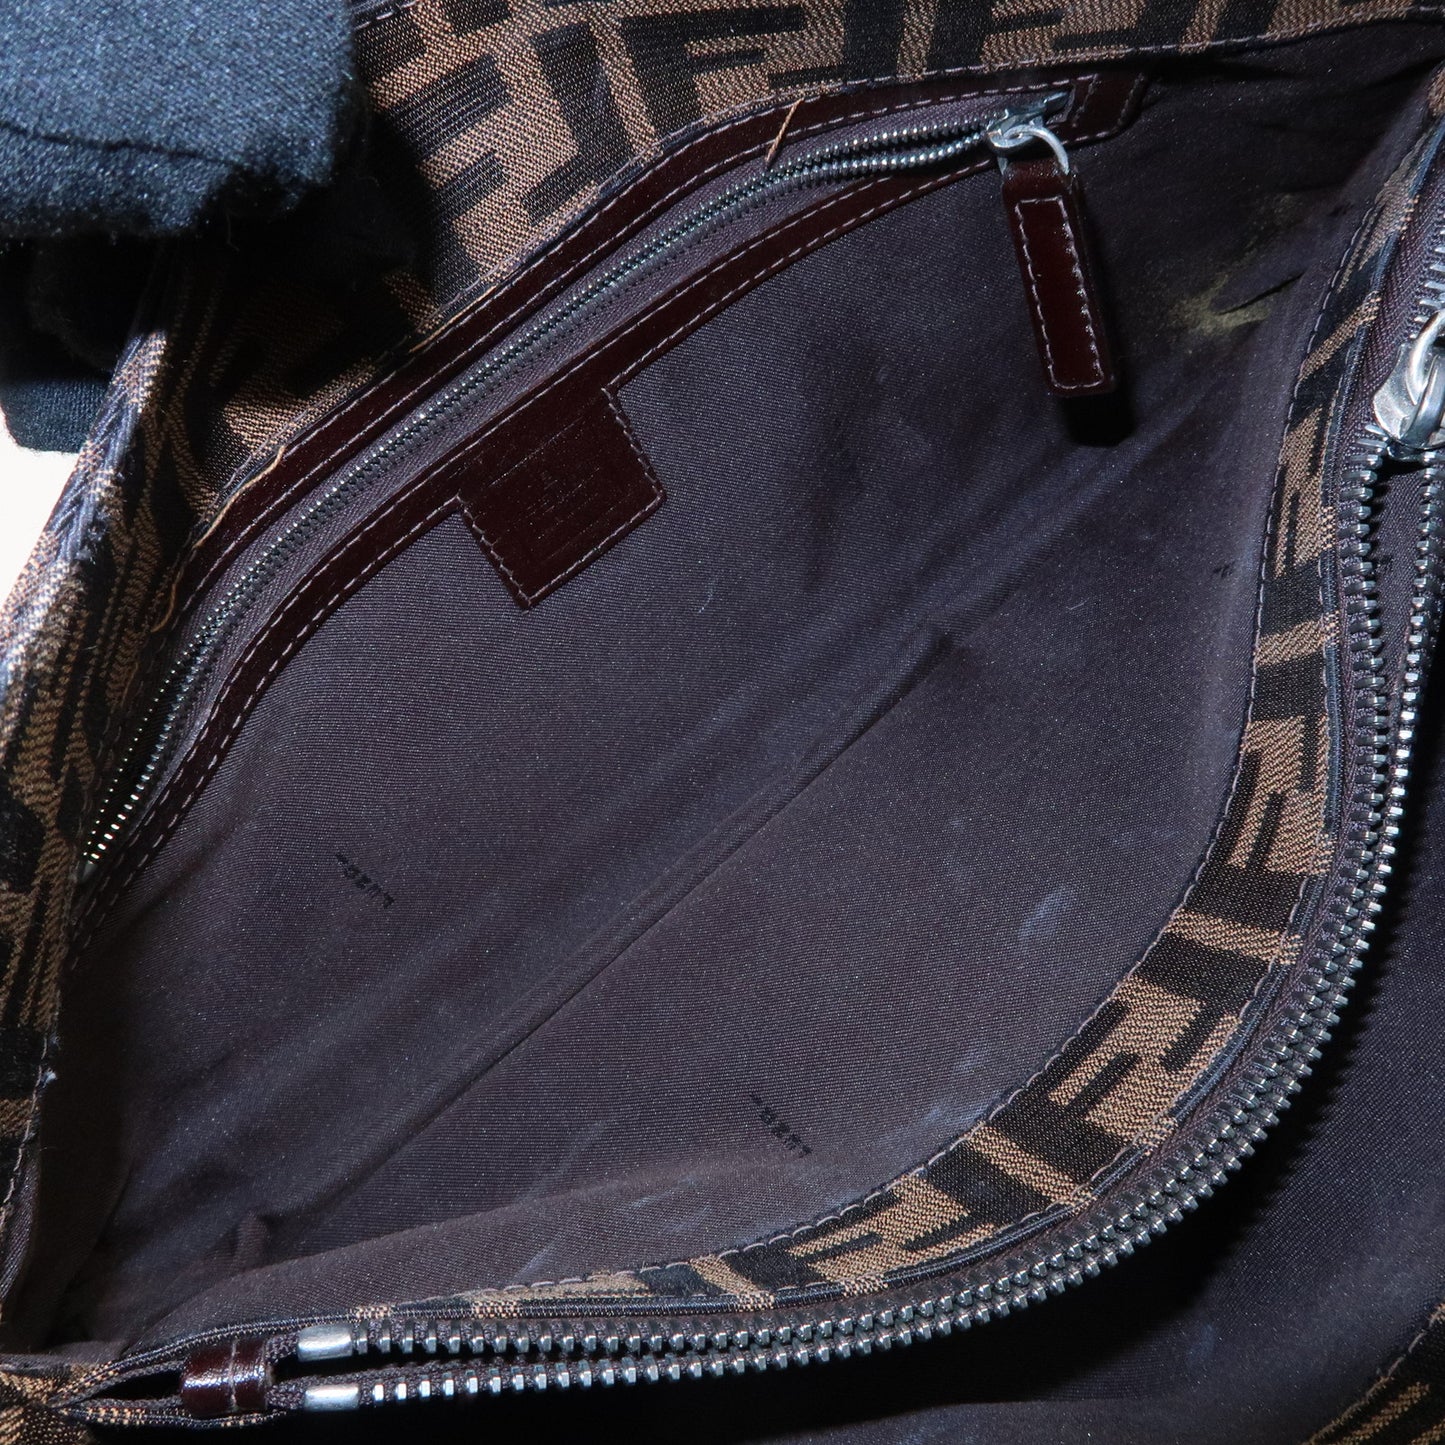 FENDI Zucca Canvas Leather Shoulder Bag Brown Black 16115